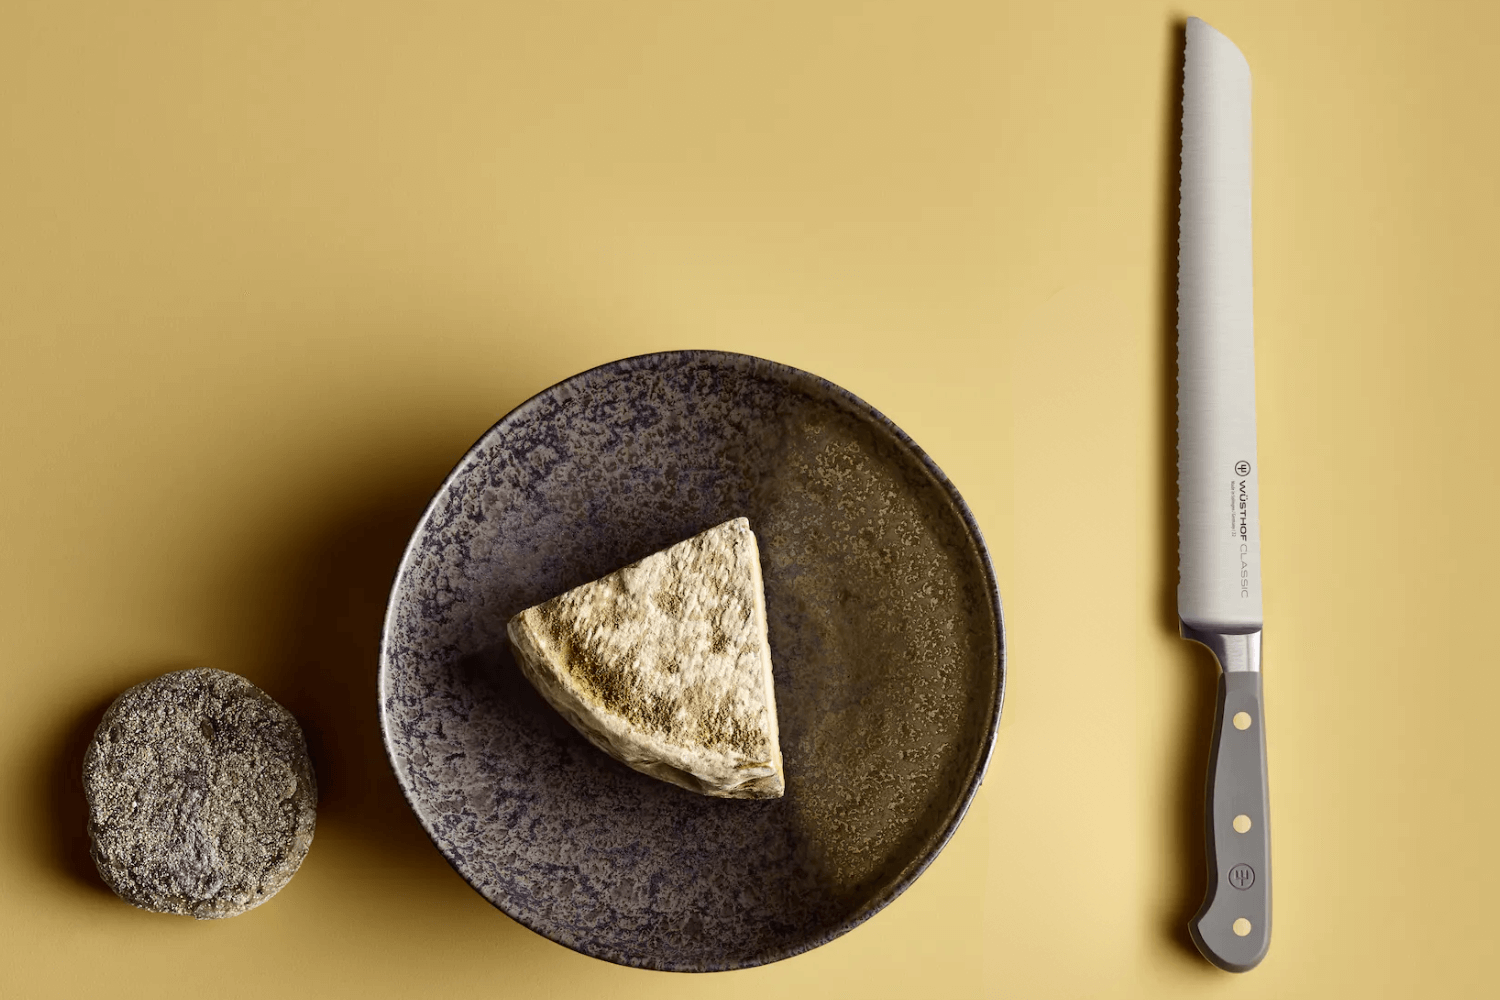 Couteau à pain micro-denté forgé 23cm Wüsthof Classic